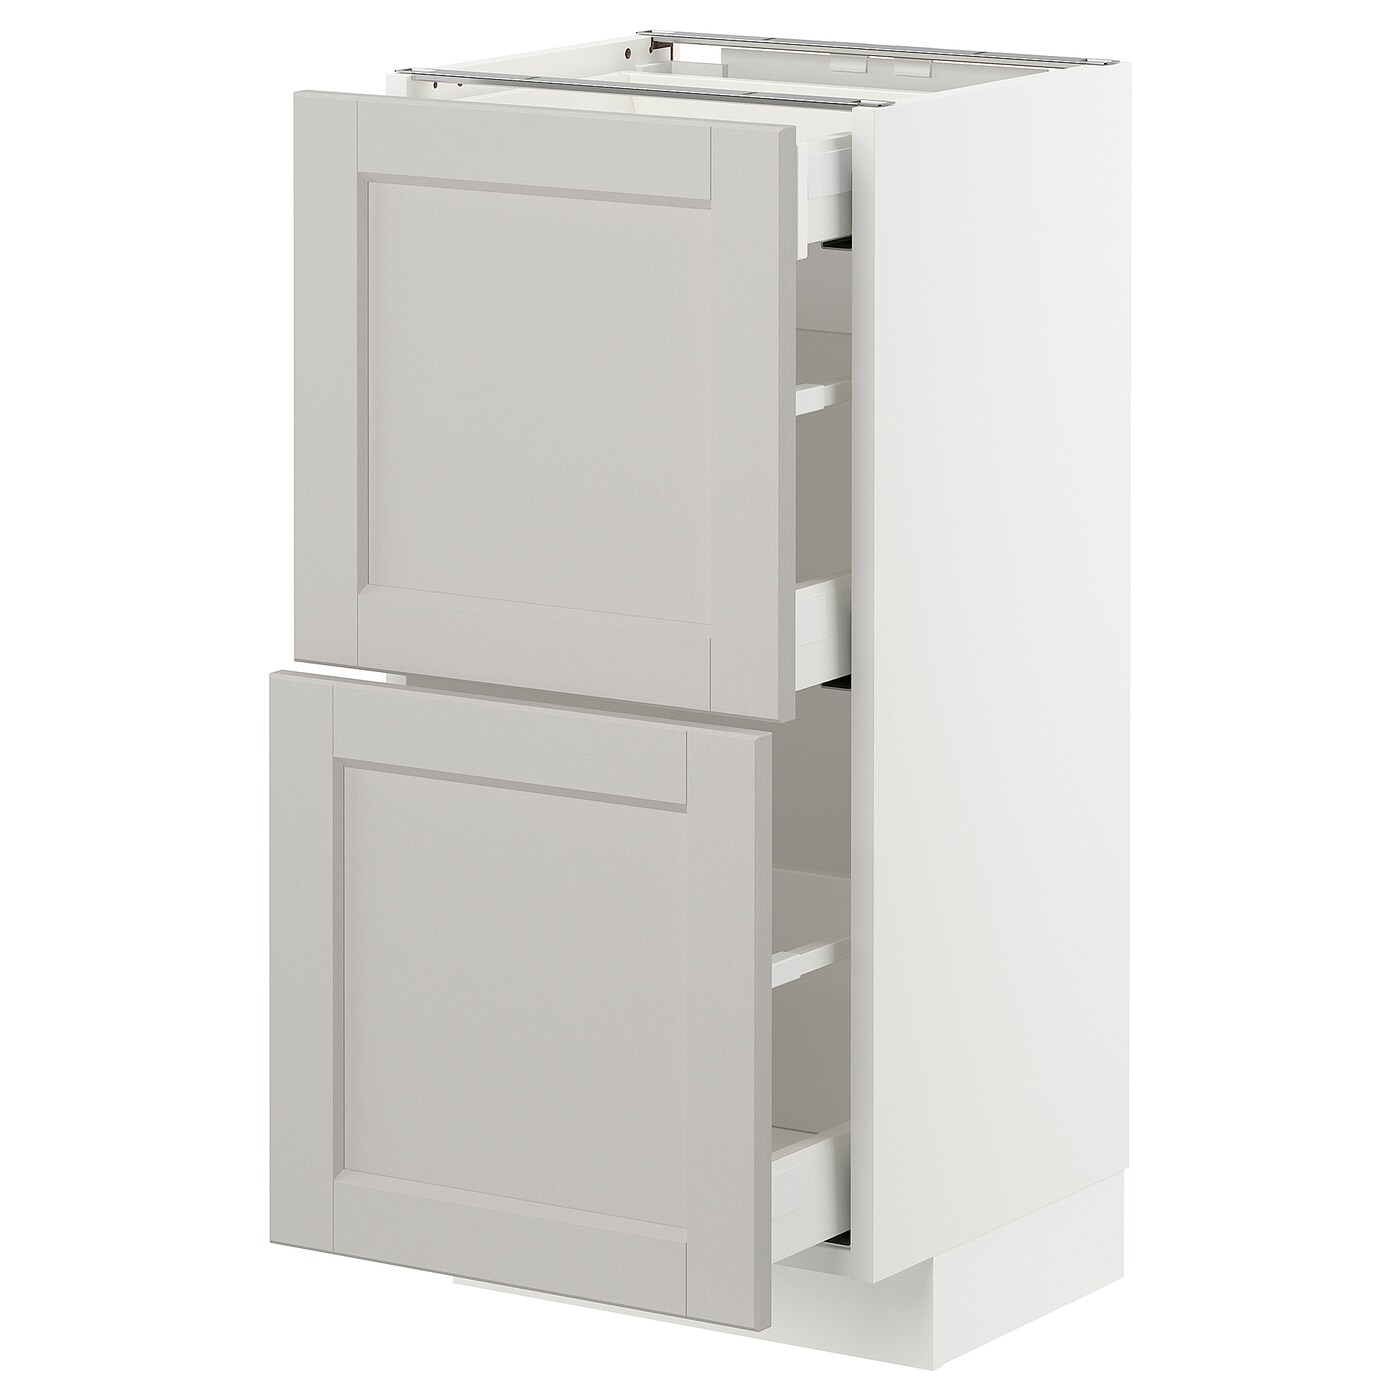 Напольный кухонный шкаф  - IKEA METOD MAXIMERA, 88x39,5x40см, белый/светло-серый, МЕТОД МАКСИМЕРА ИКЕА